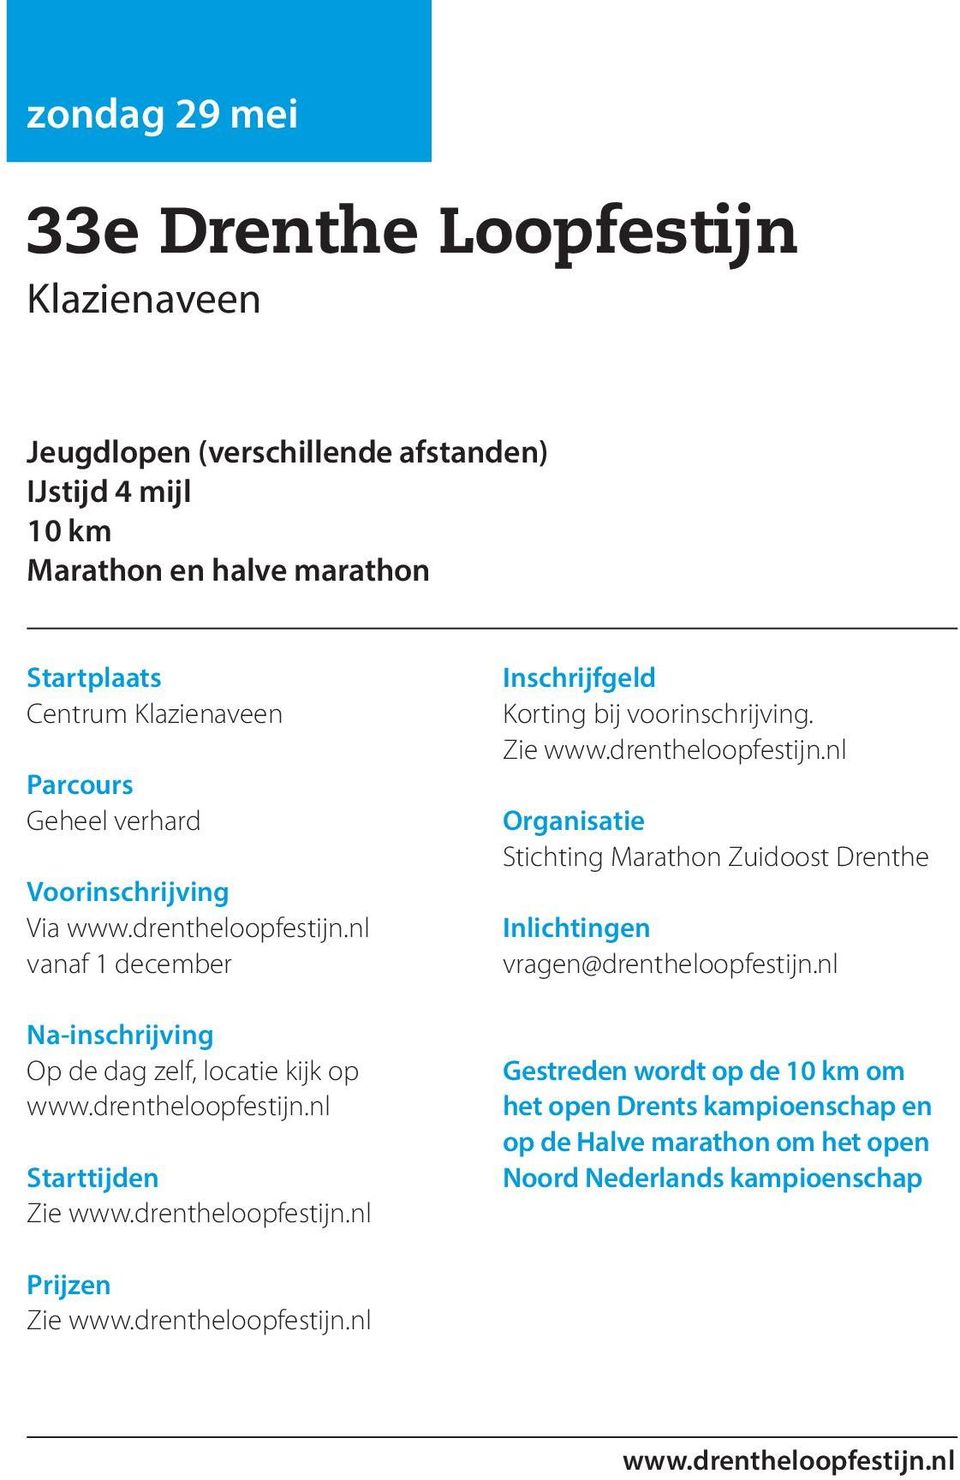 drentheloopfestijn.nl Korting bij voorinschrijving. Zie www.drentheloopfestijn.nl Stichting Marathon Zuidoost Drenthe vragen@drentheloopfestijn.